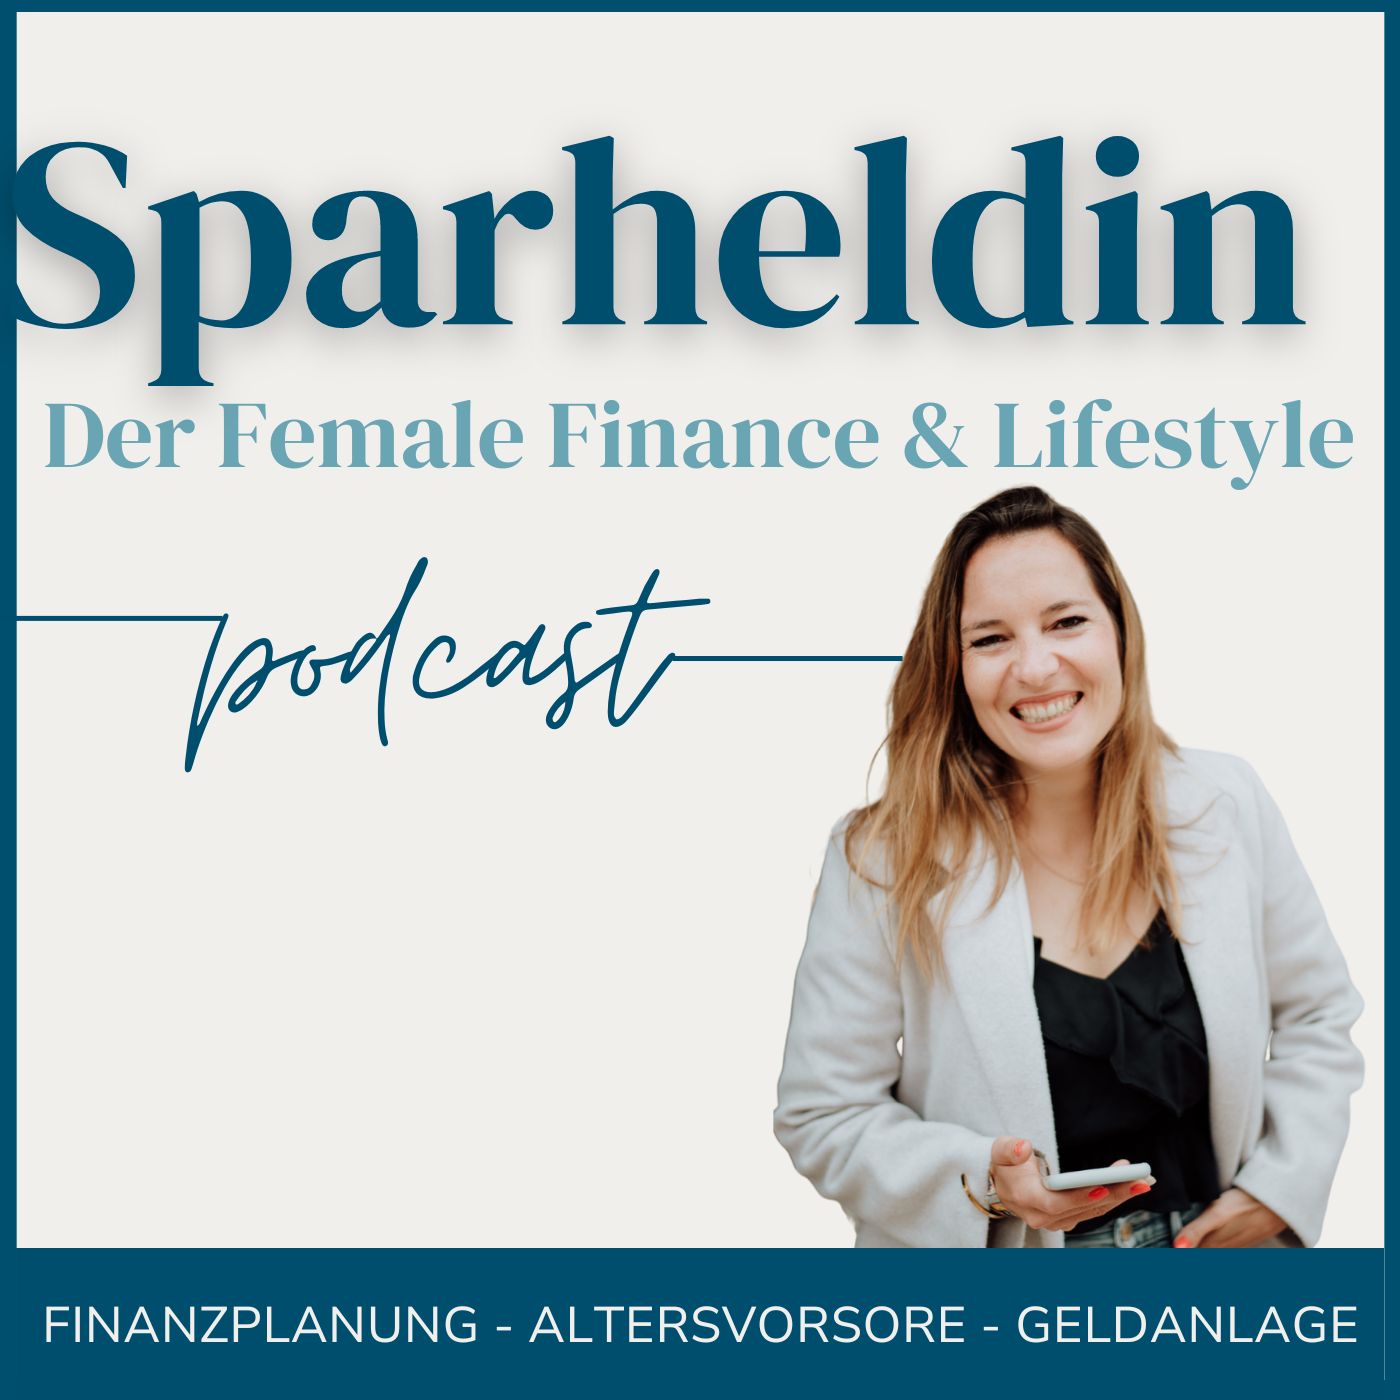 Sparheldin Podcast - Female Finance